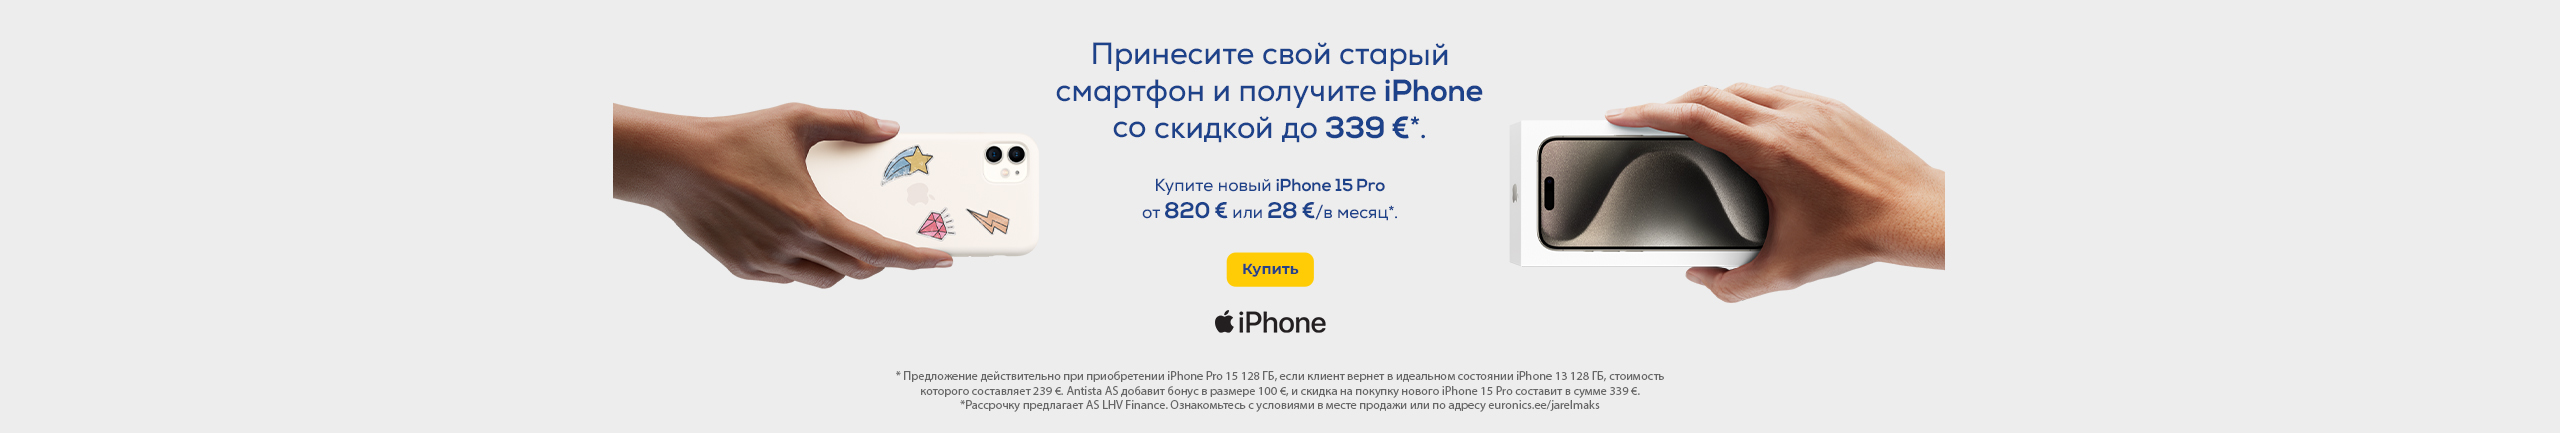 Кампания двойного выкупа Apple iPhone 2